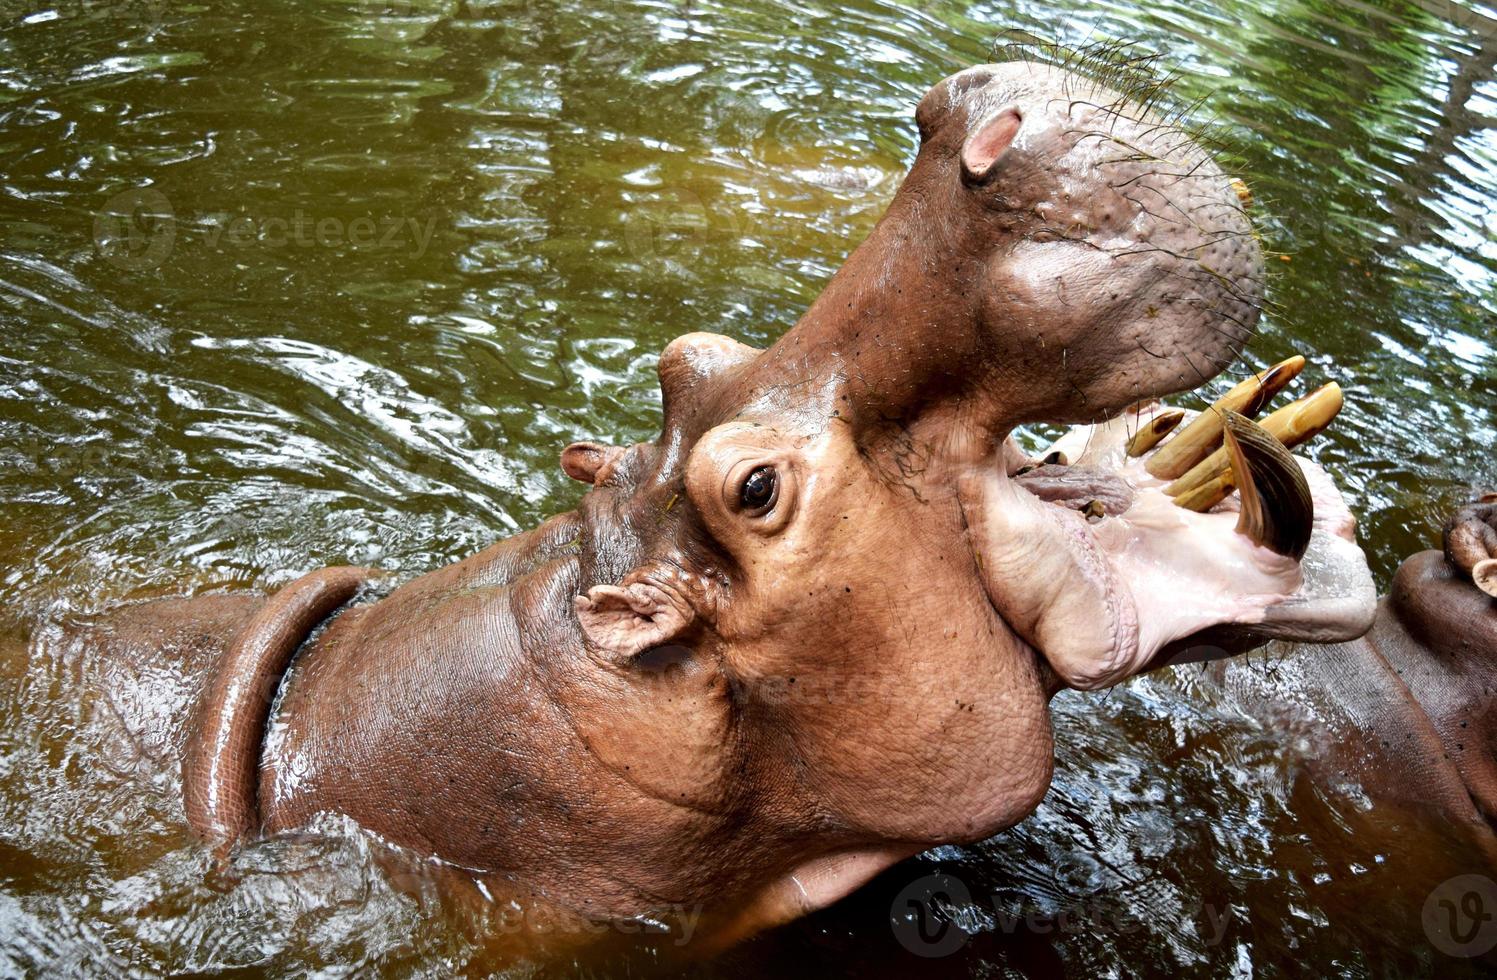 nijlpaardenreus opende zijn mond op het water. foto